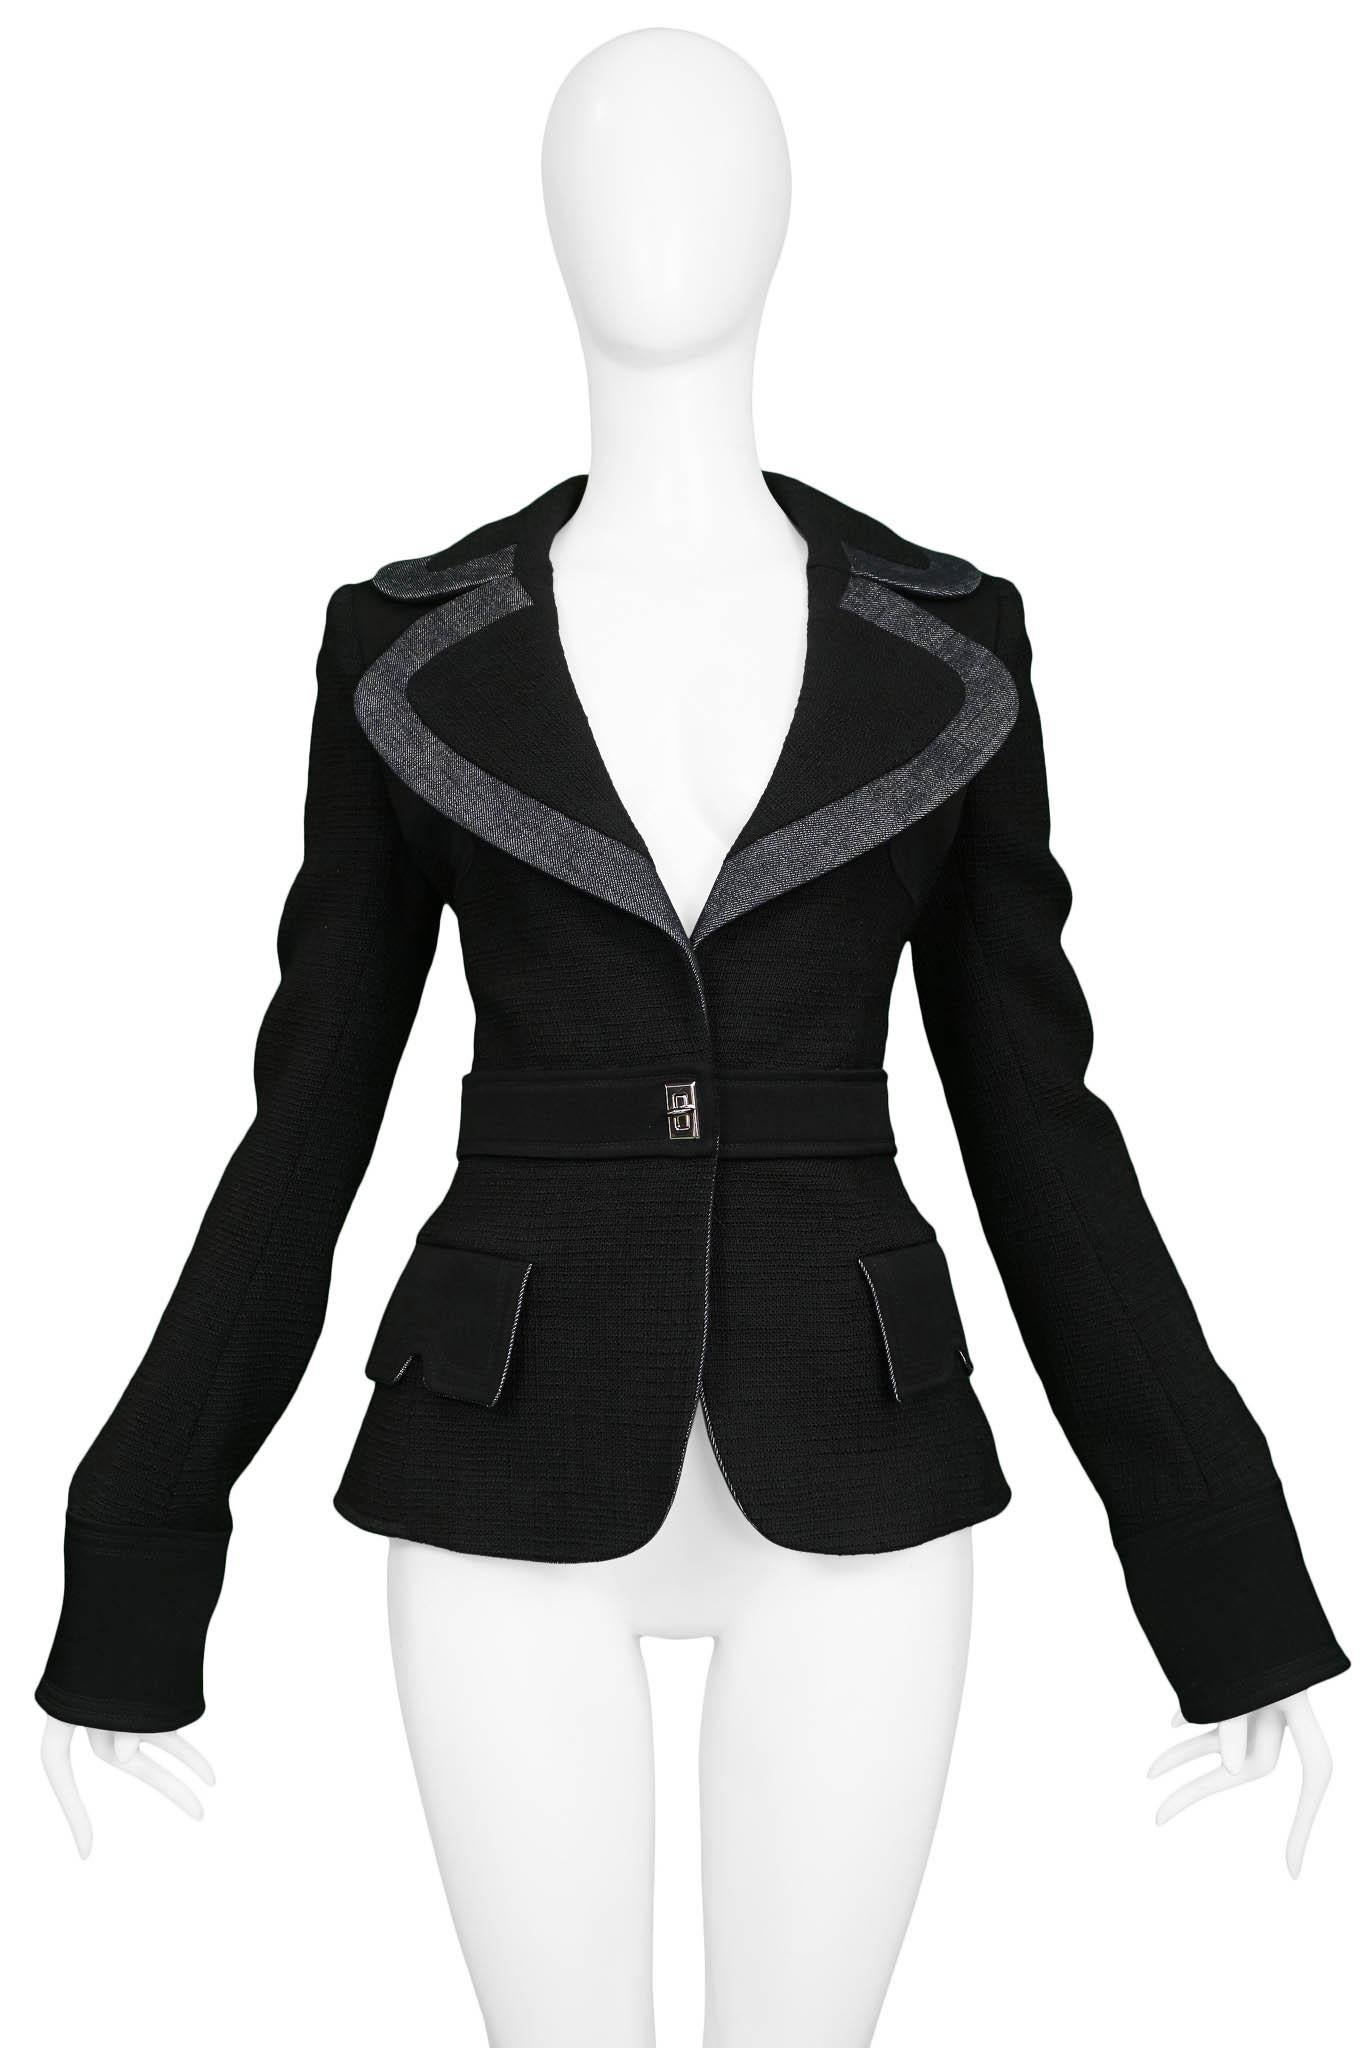 Resurrection Vintage a le plaisir de vous proposer une veste blazer noire vintage Balenciaga by Nicolas Ghesquière, avec un col et des revers extra-larges et ronds, une ceinture attachée avec un fermoir argenté, des rabats de poche latéraux, des